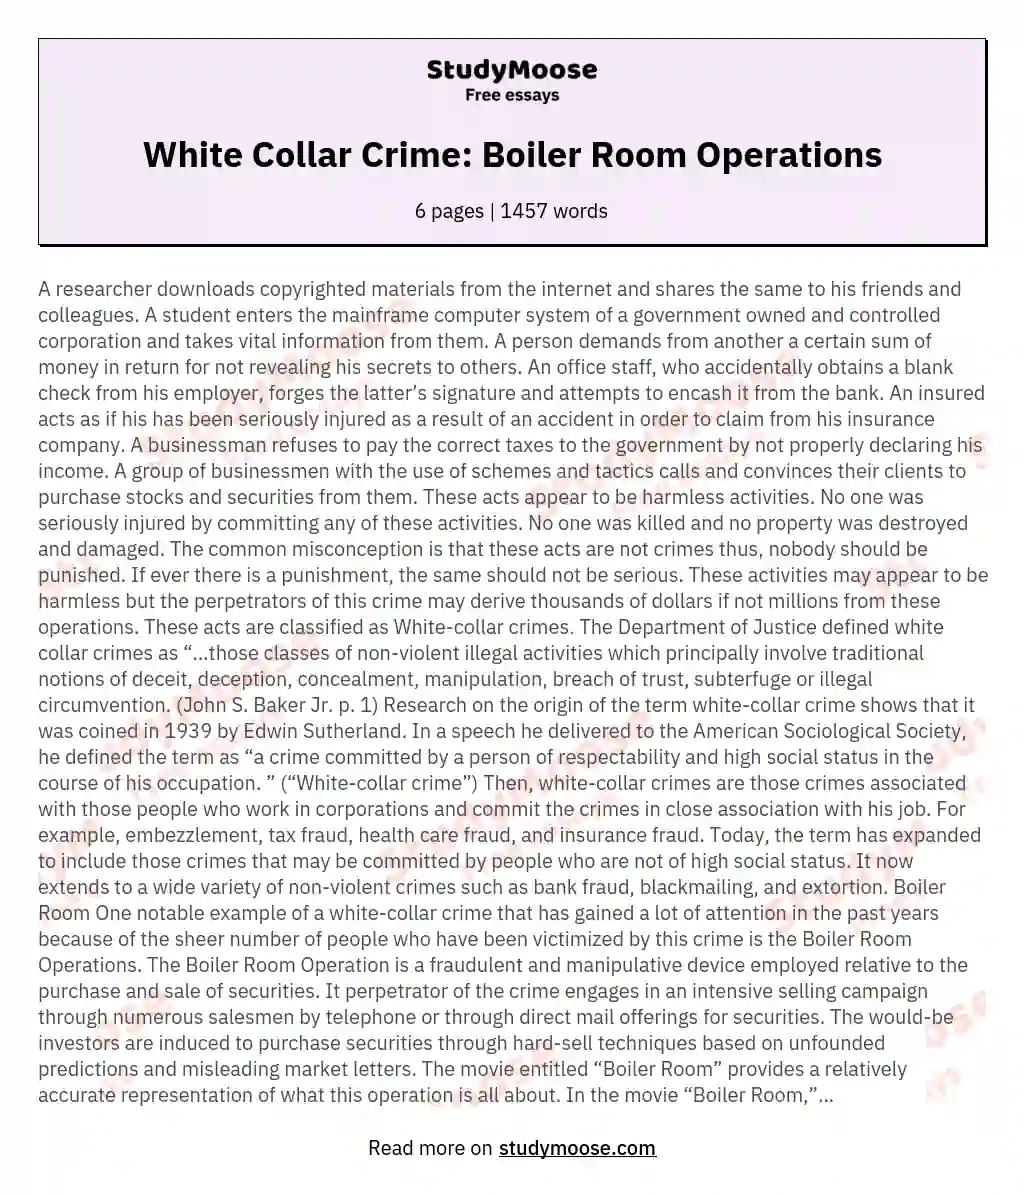 White Collar Crime: Boiler Room Operations essay